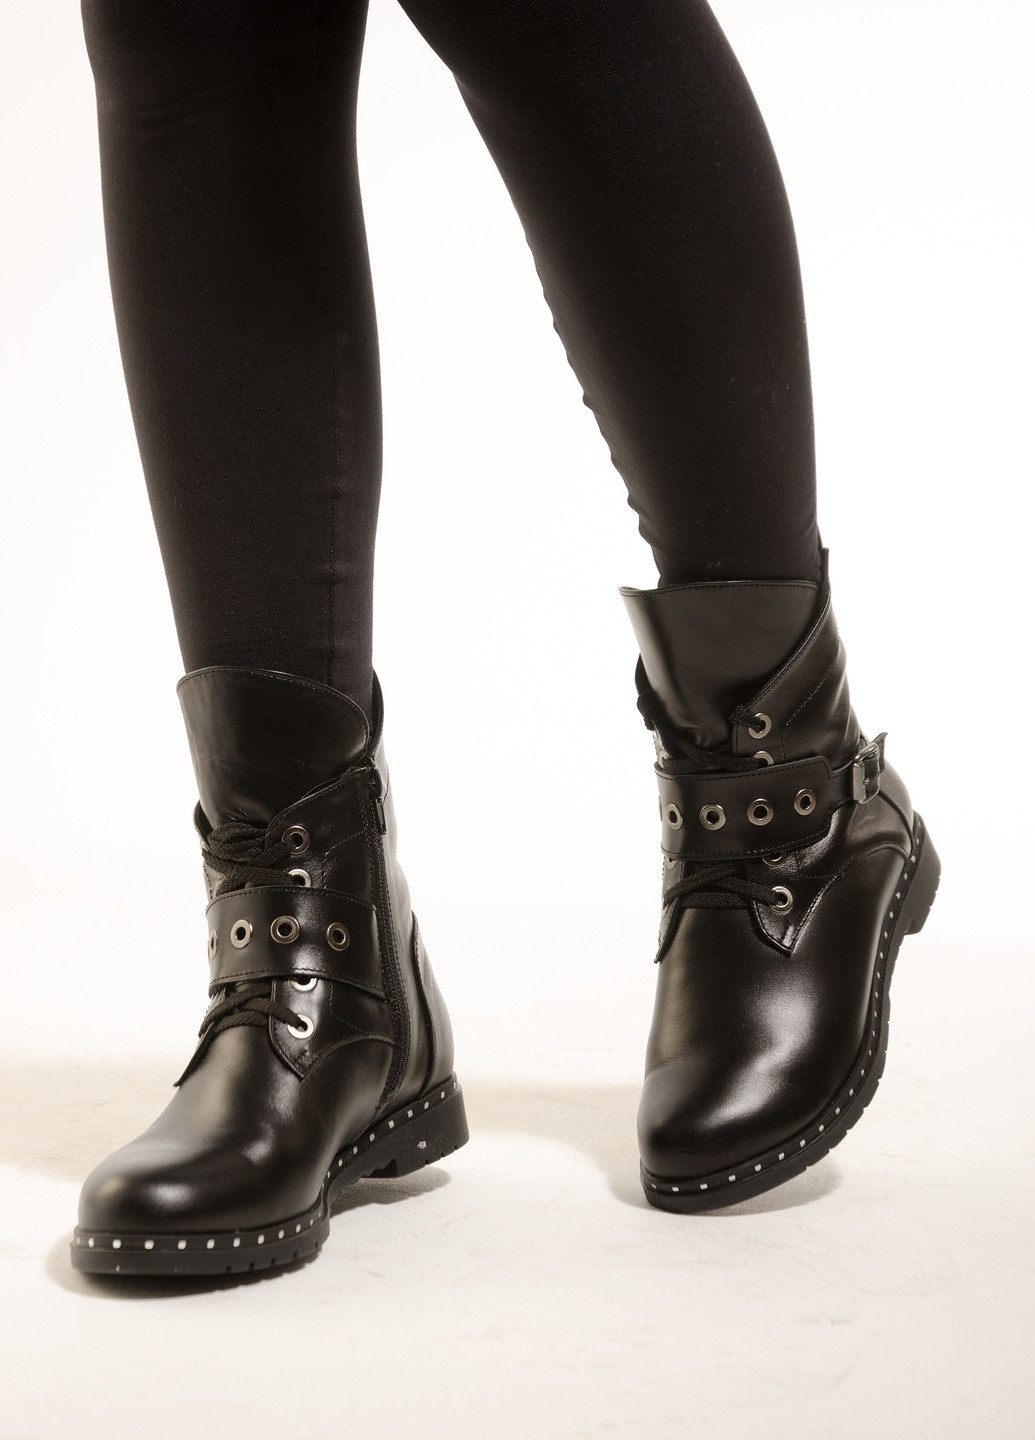 Зимние женские ботинки из натуральной кожи черного цвета хайкеры INNOE с пряжкой